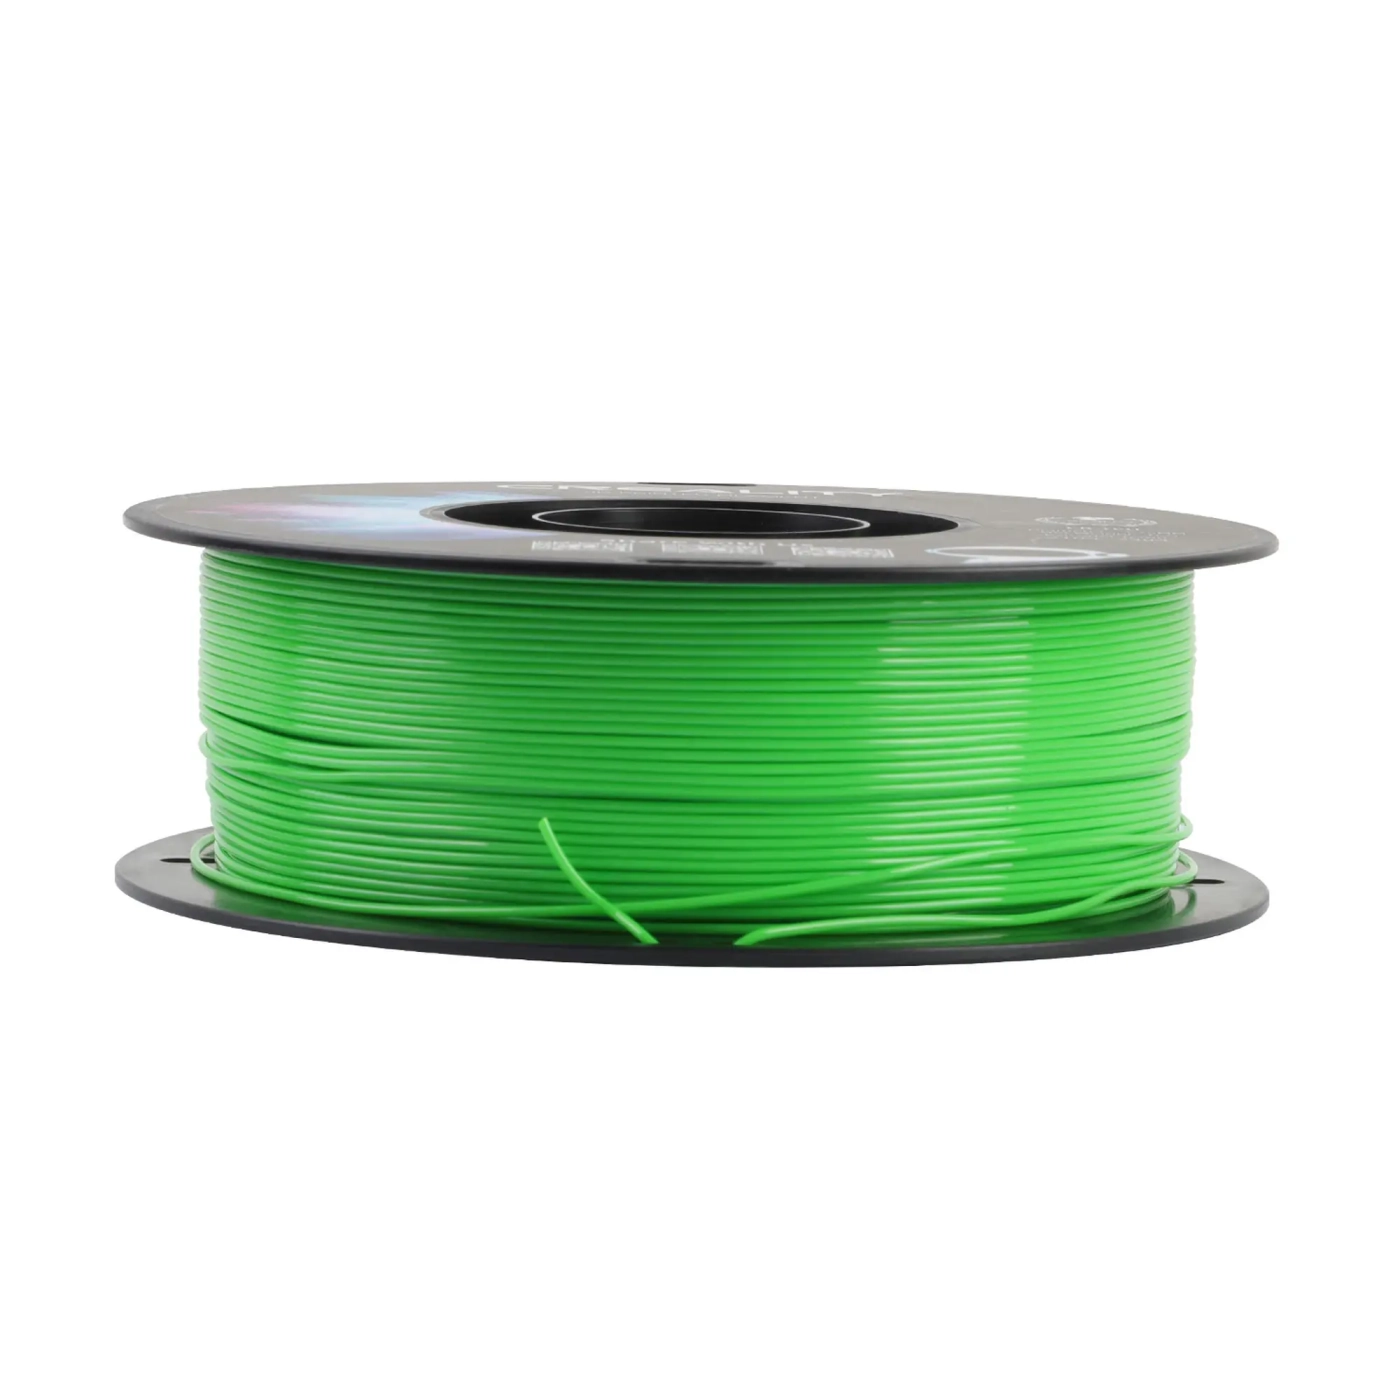 Купить TPU Filament (пластик) для 3D принтера CREALITY 1кг, 1.75мм, зеленый - фото 4